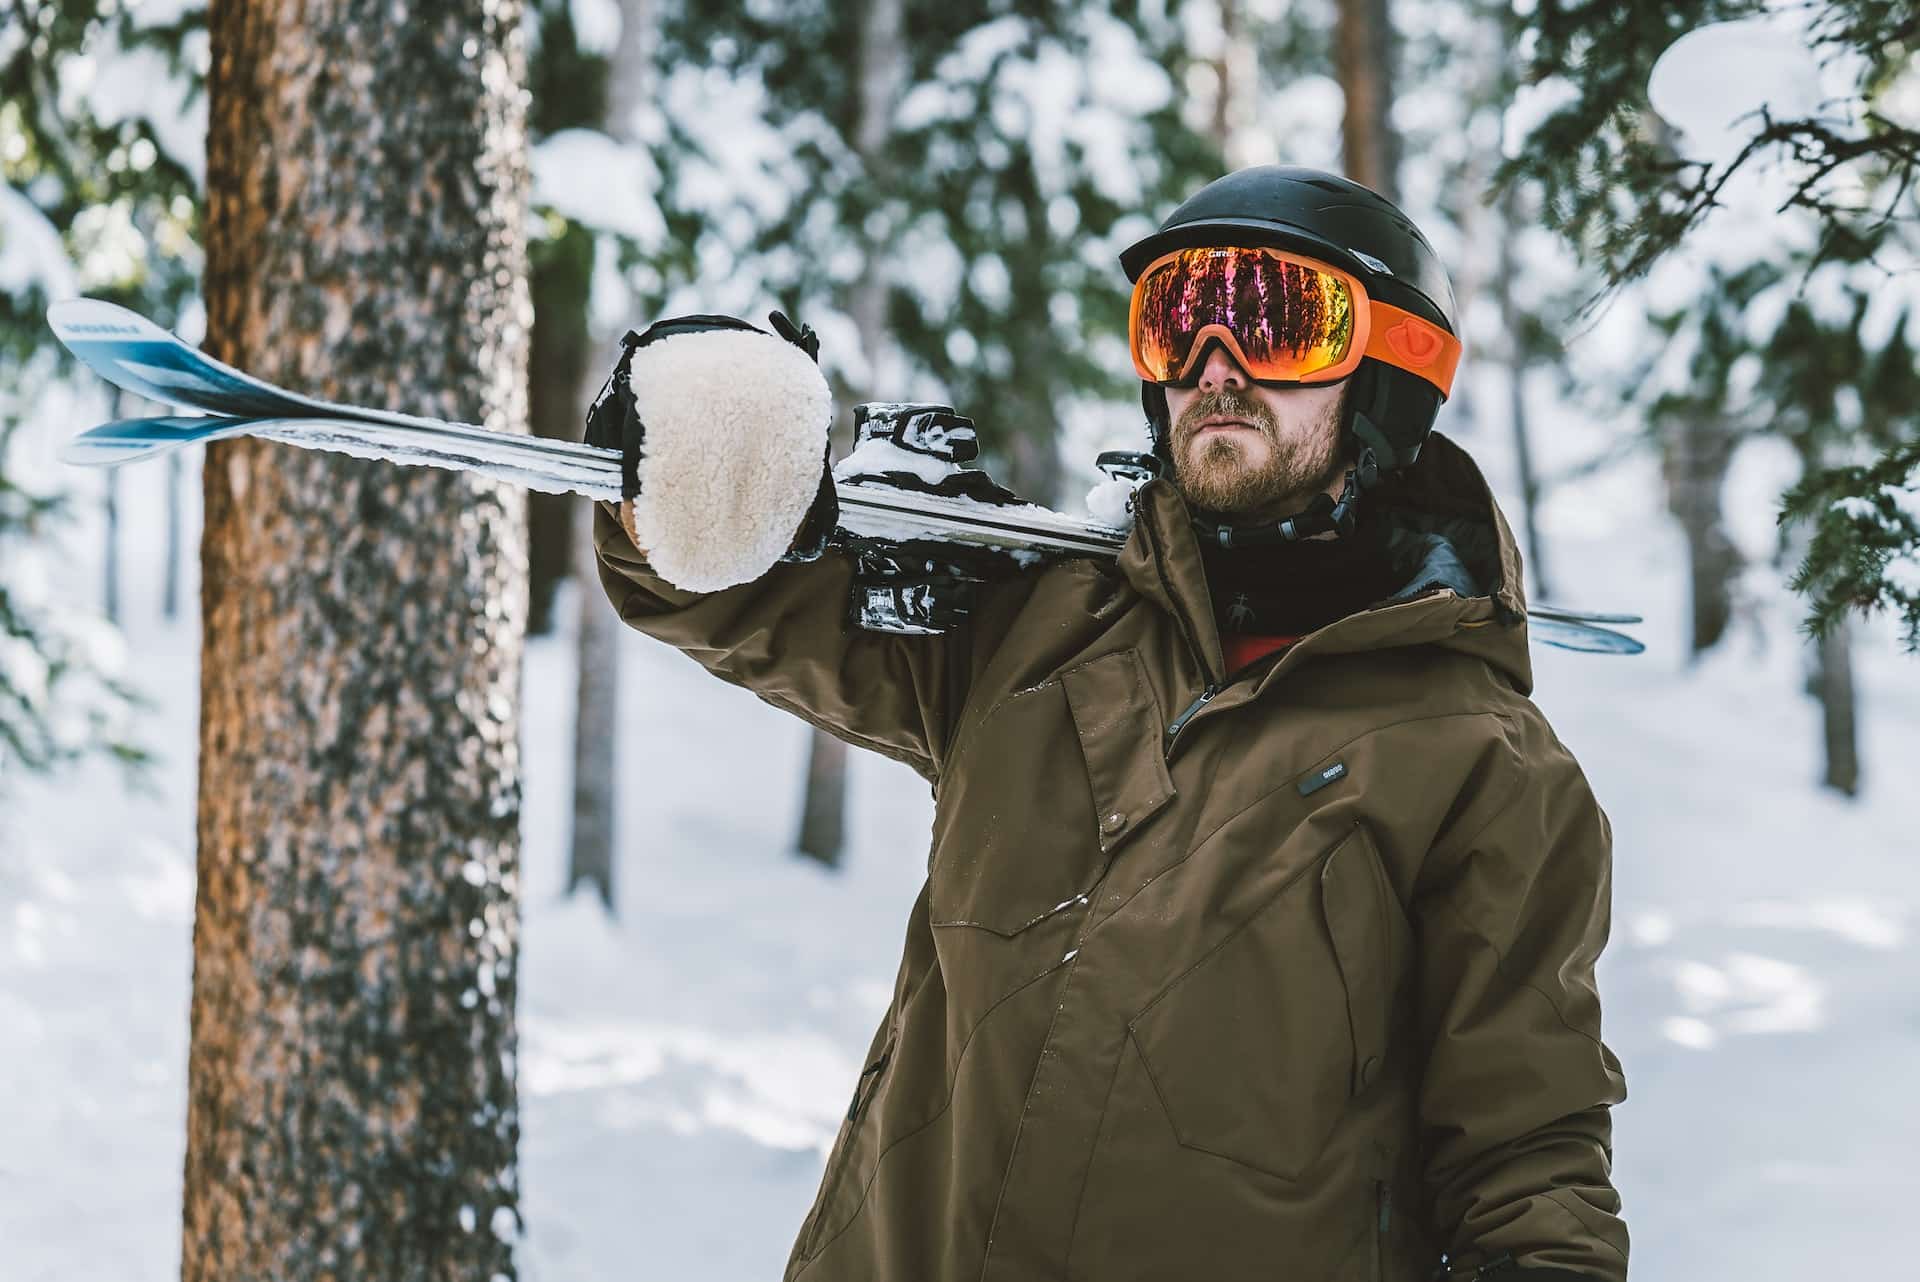 Montagne : vaut-il mieux acheter ou louer ses skis ?